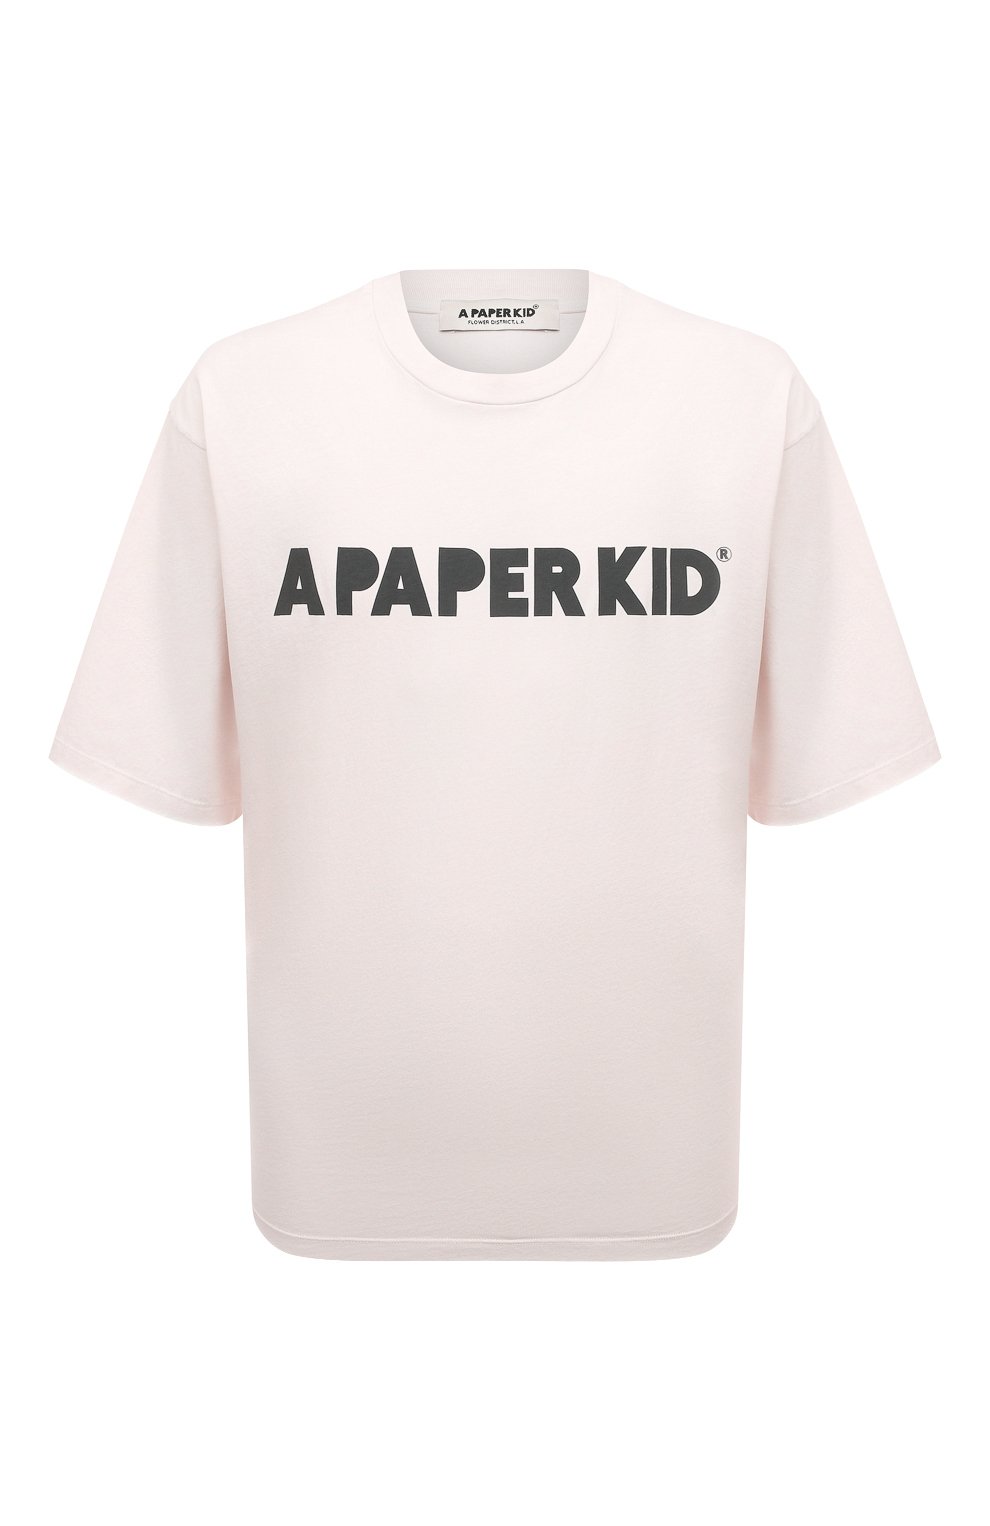 Футболки A Paper Kid, Хлопковая футболка A Paper Kid, Италия, Кремовый, Хлопок: 100%;, 13285597  - купить